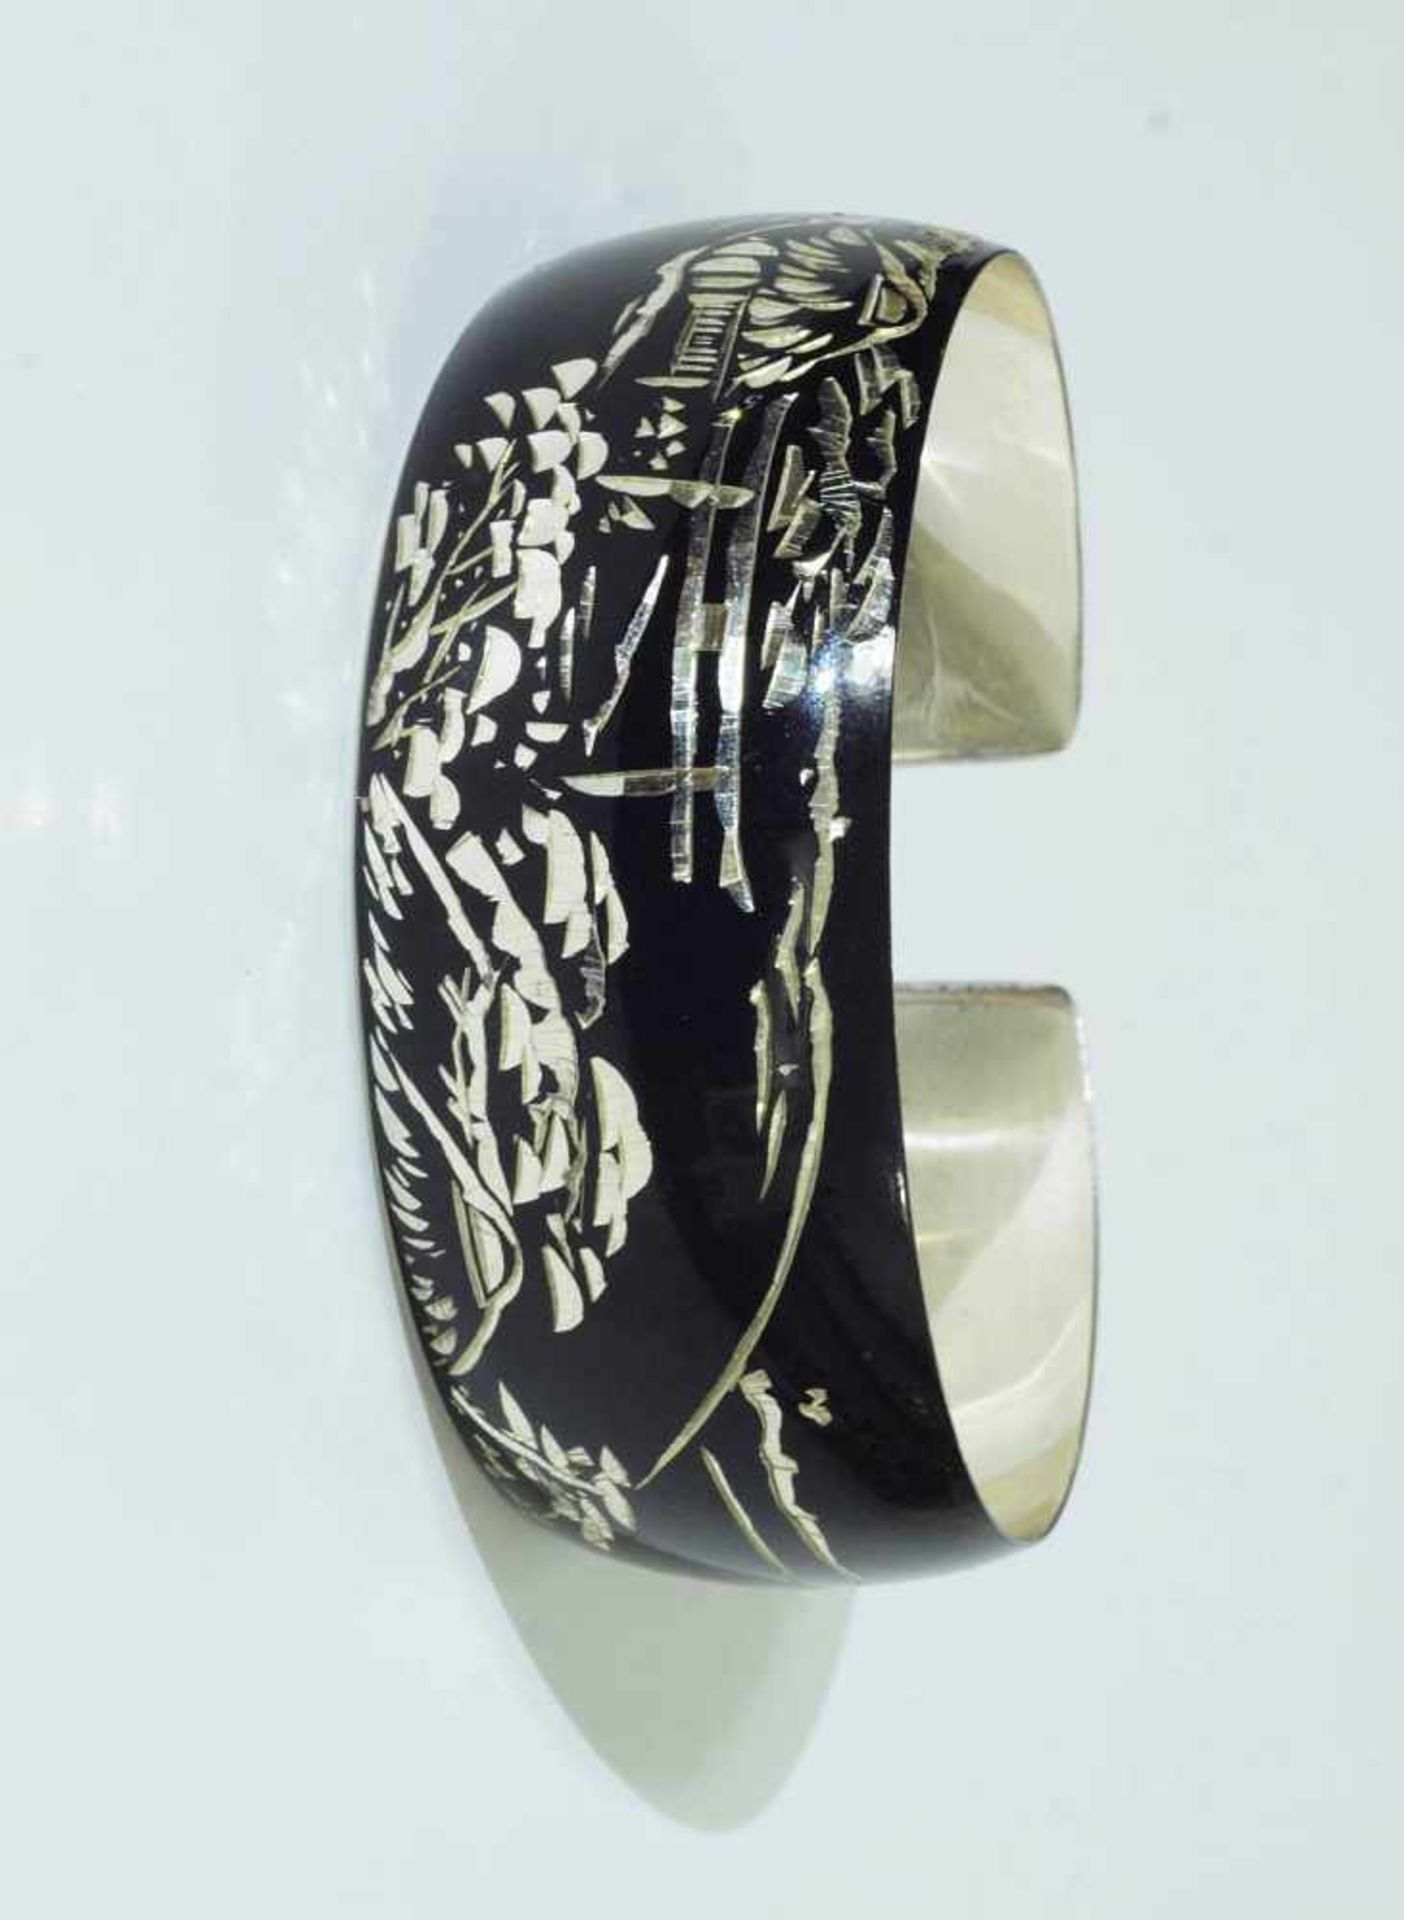 Armspange.Armspange. Silber punziert. Schwarz gestaltete Oberfläche in Lackoptik, gravierte - Bild 2 aus 4